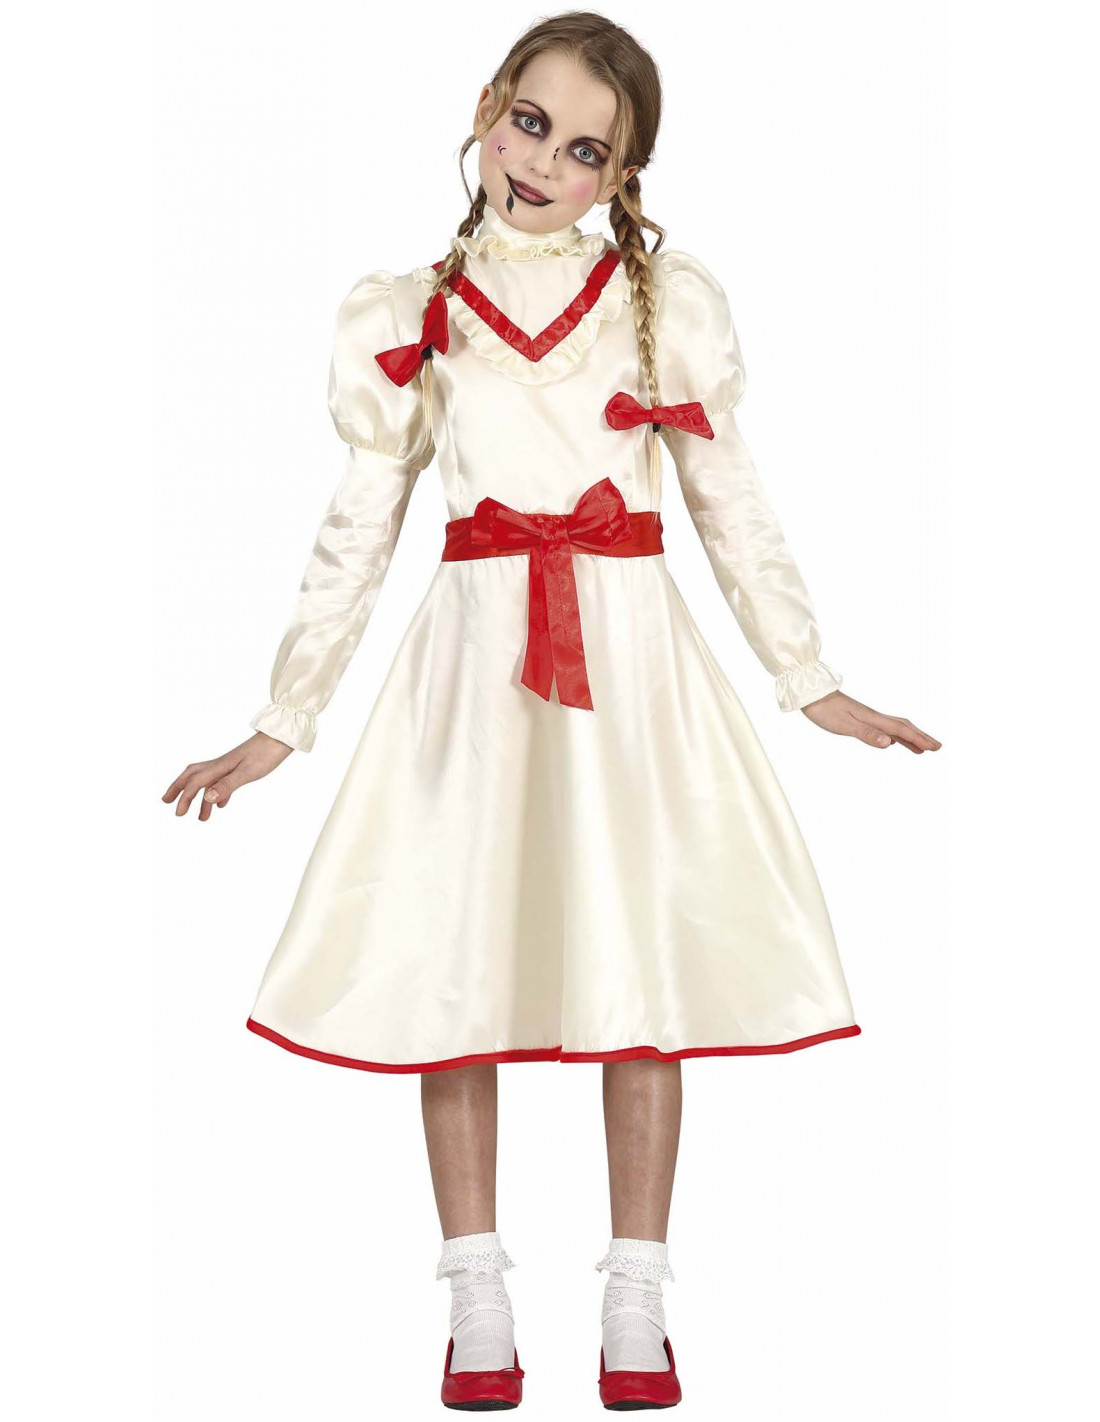 sal Ejecución Rústico Disfraz Muñeca Annabelle Infantil | Comprar Online